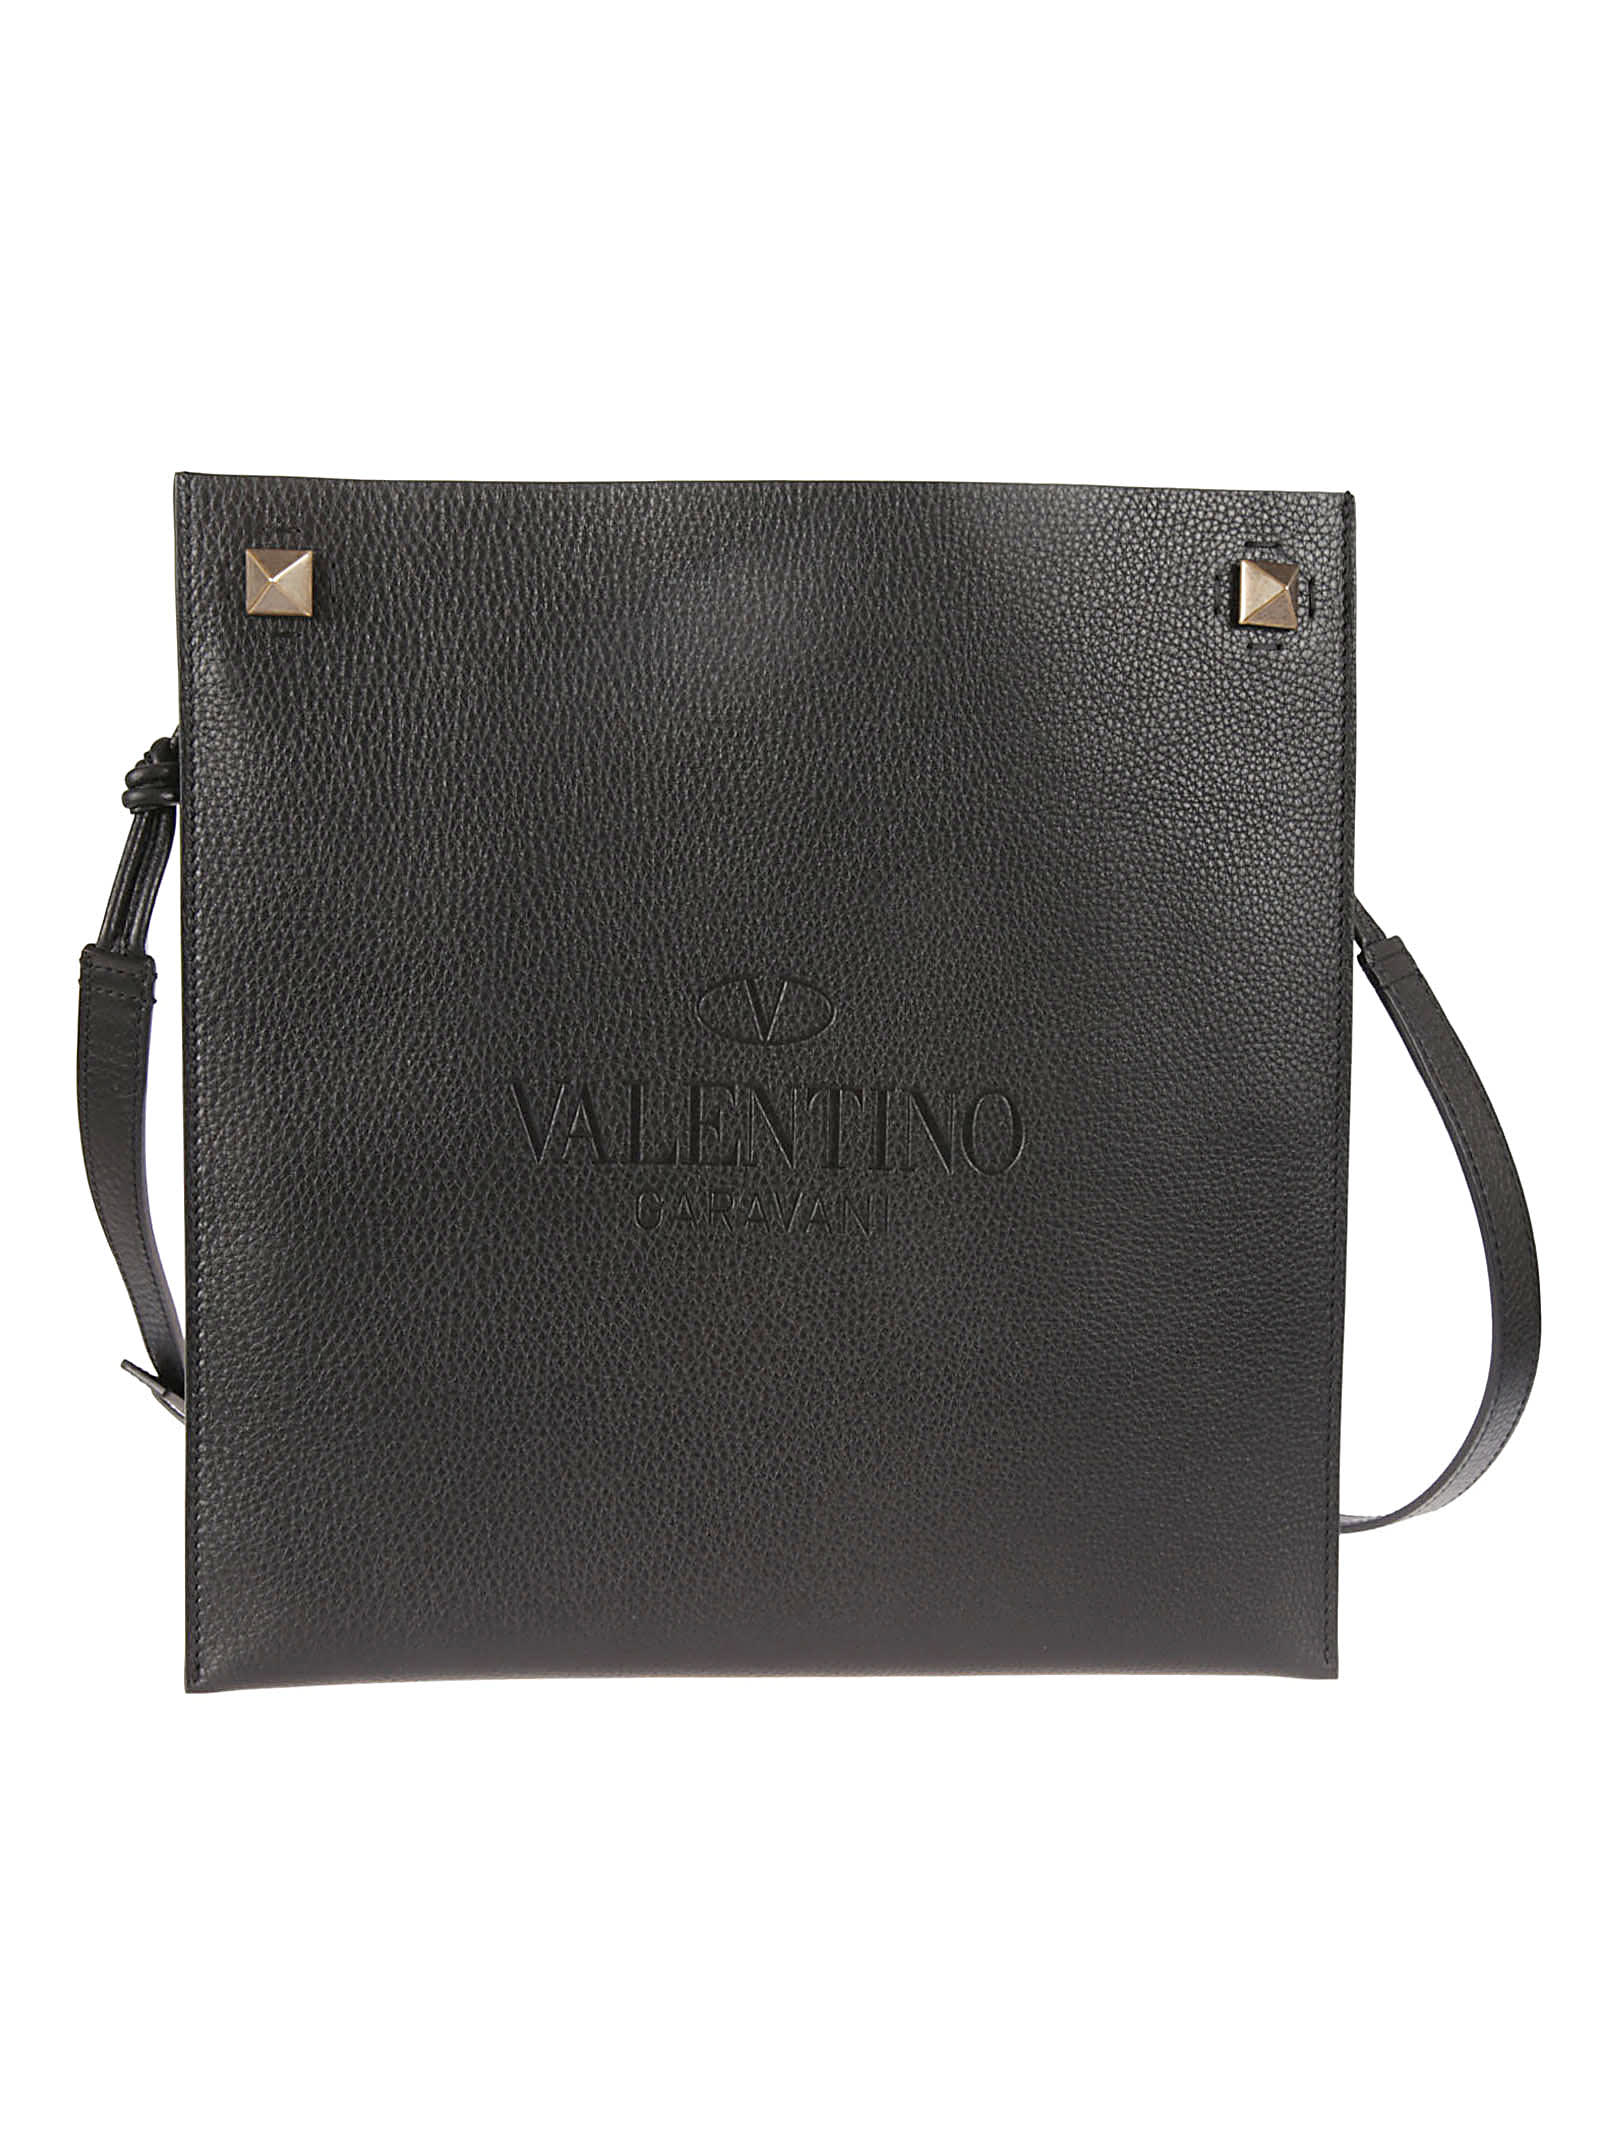 Valentino Garavani Engraved Logo Flat Shoulder Bag In Black